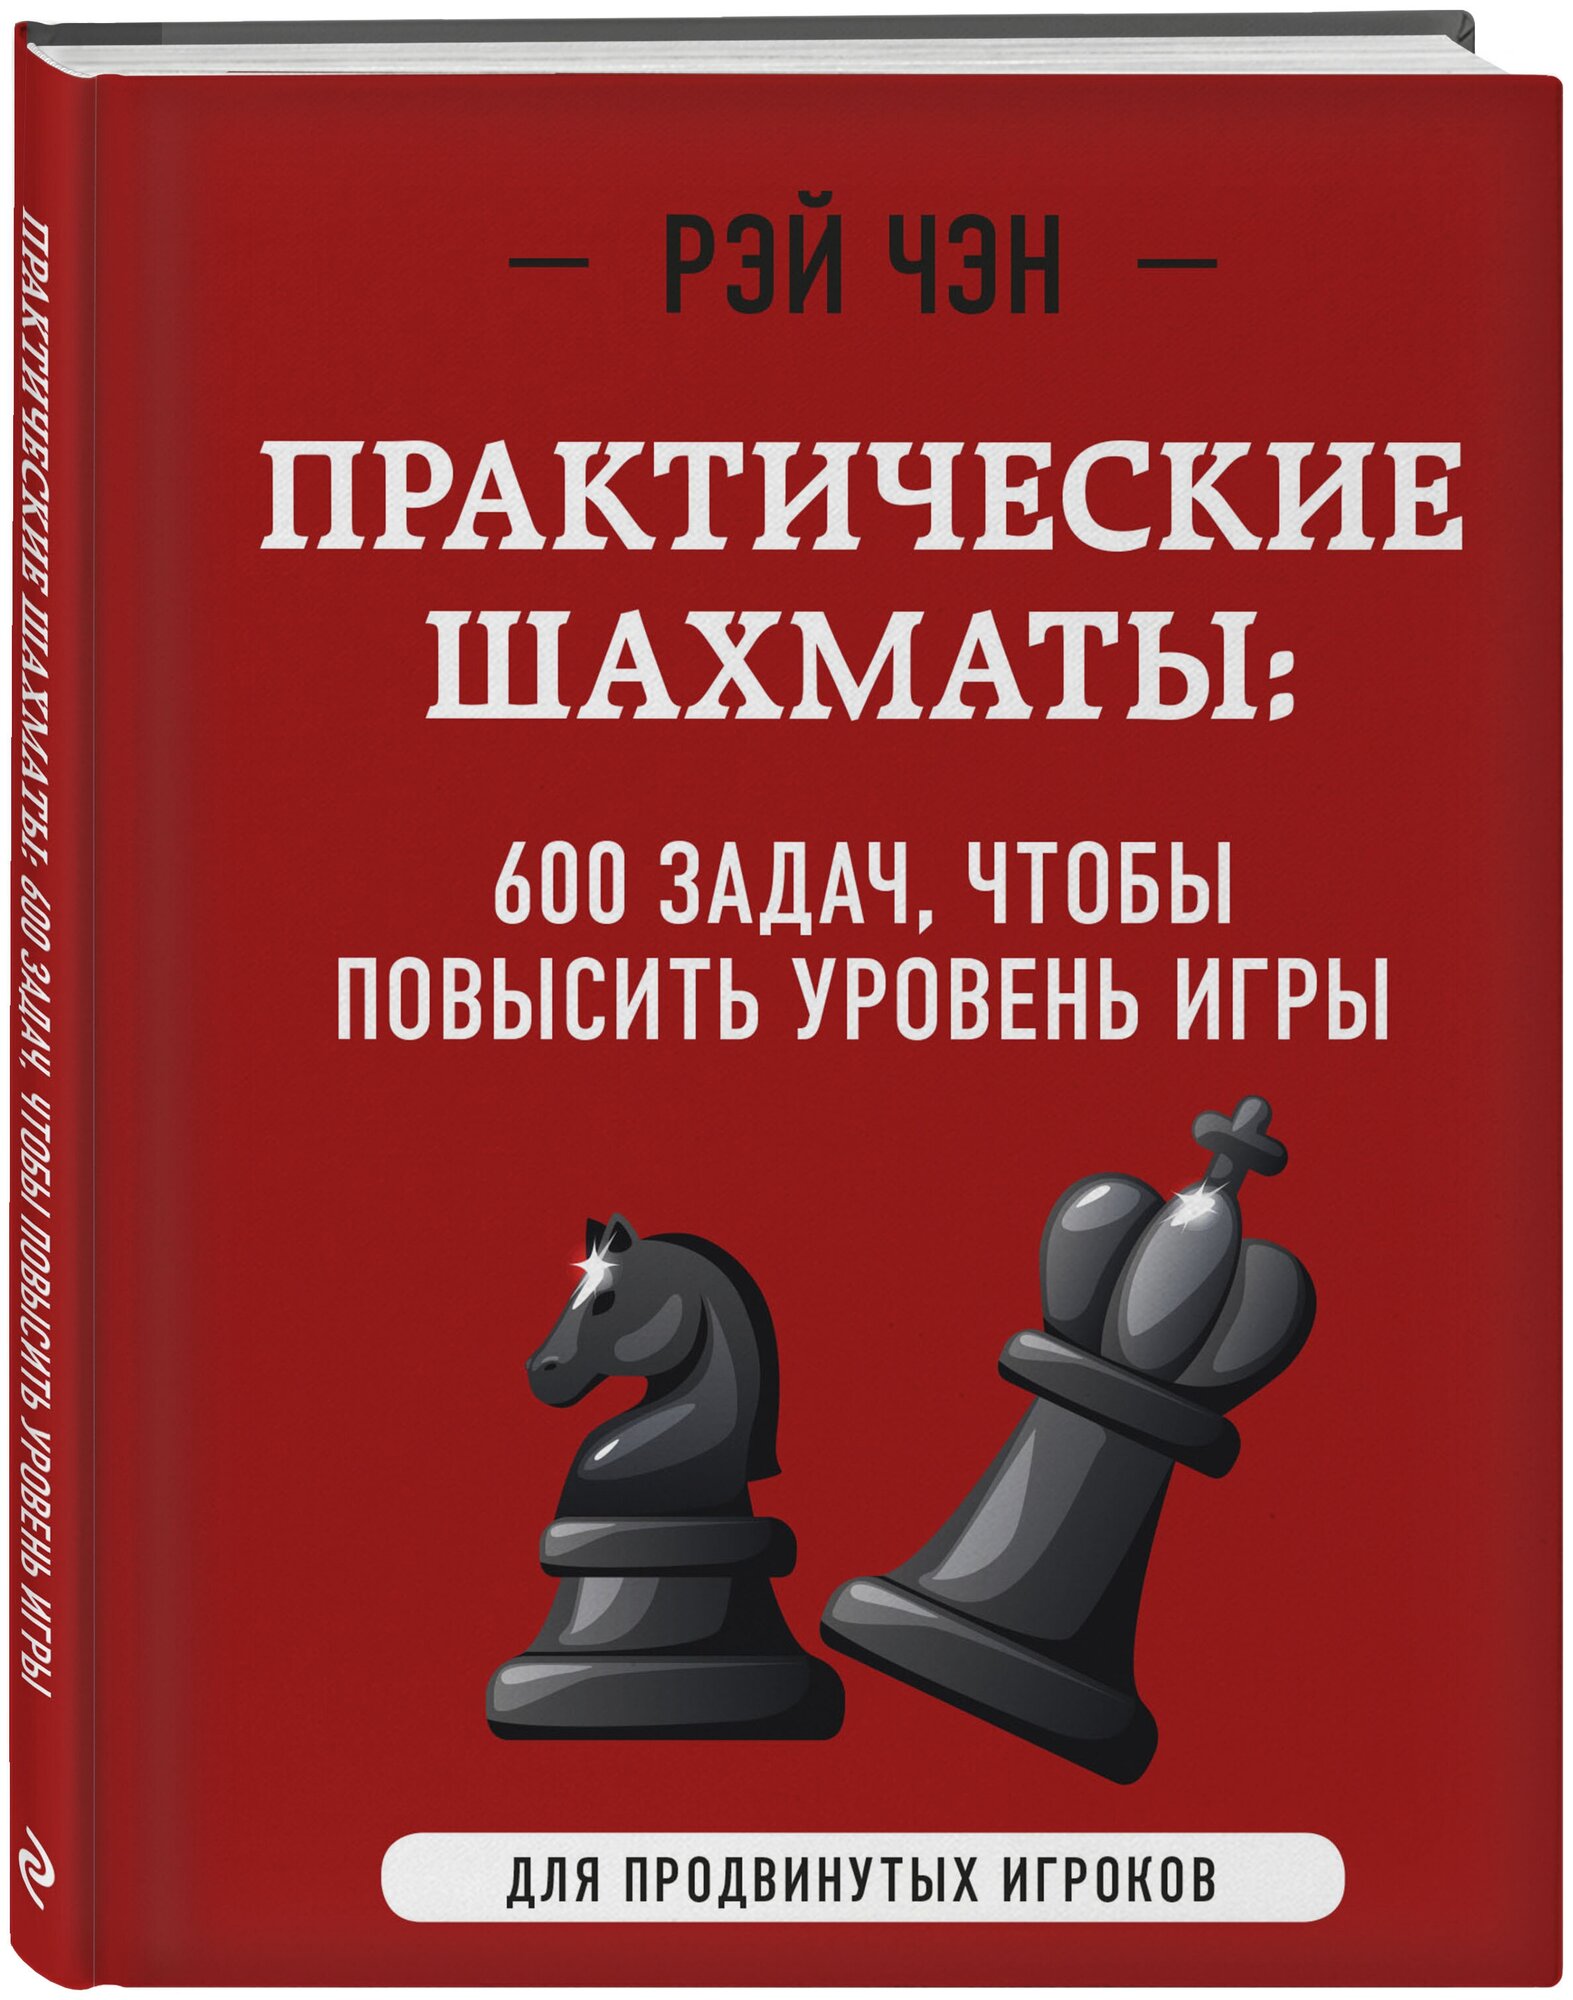 Практические шахматы: 600 задач, чтобы повысить уровень игры (2 издание) - фото №1